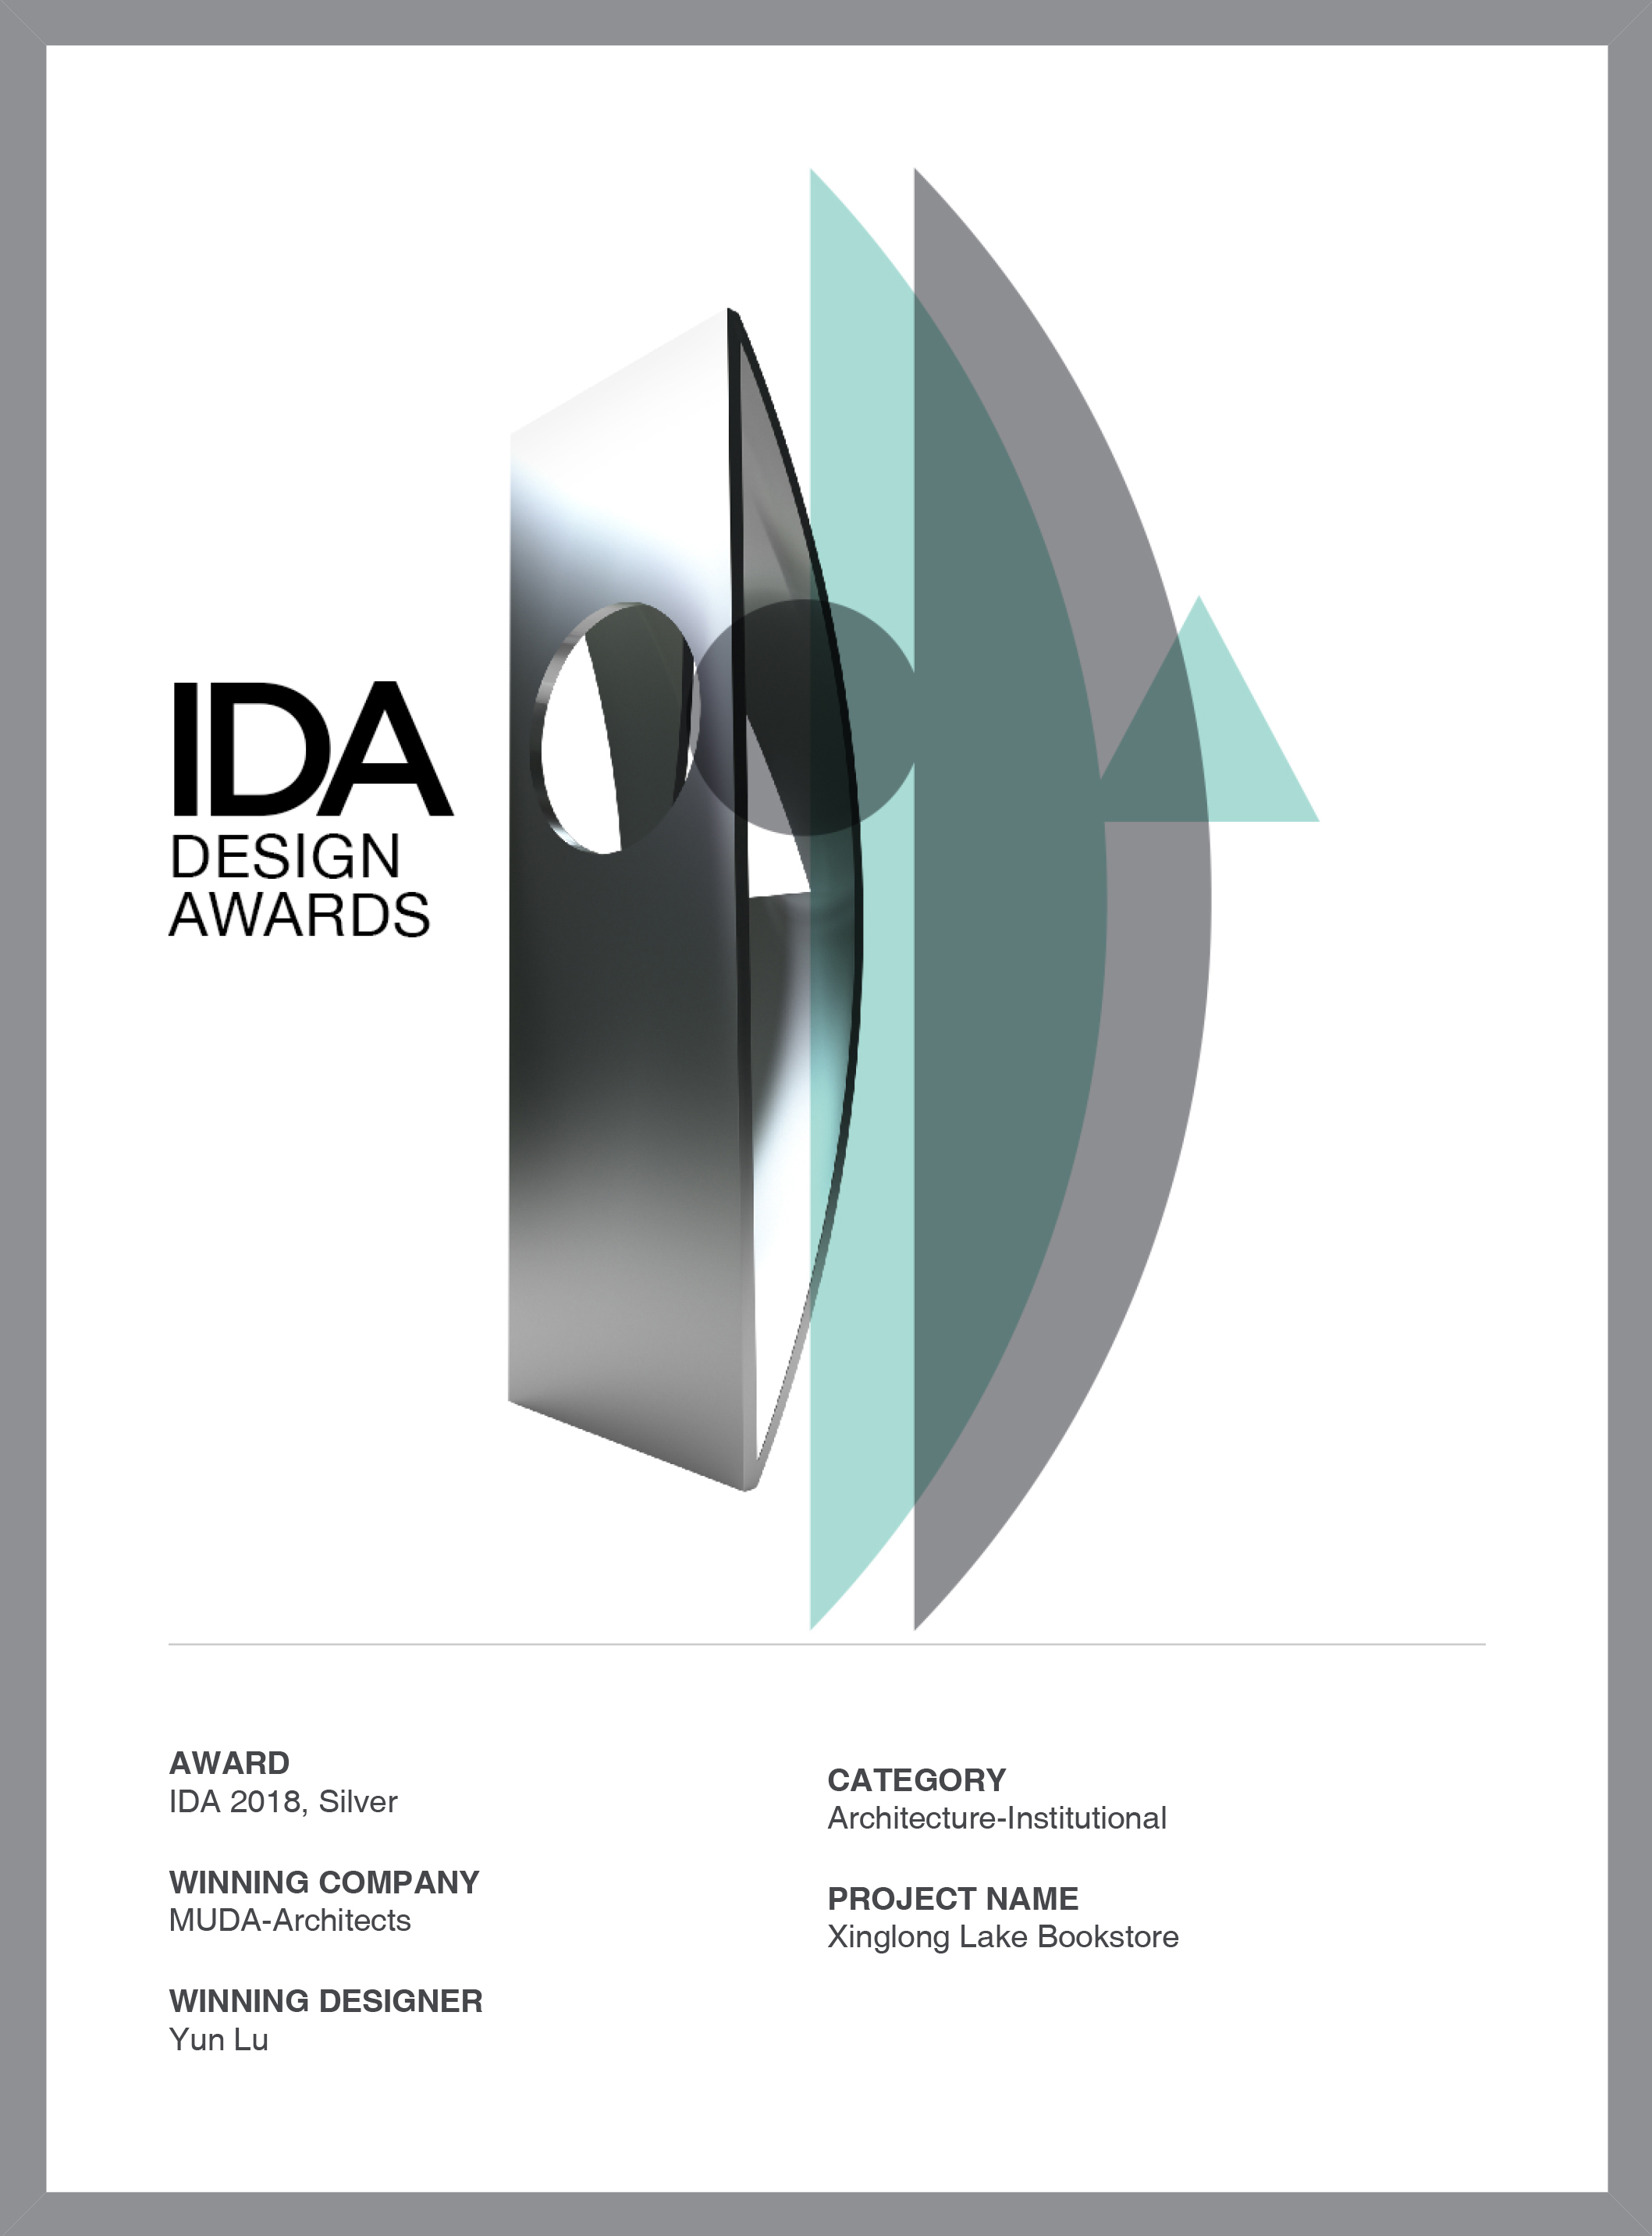 MUDA won the 2018 IDA design awards